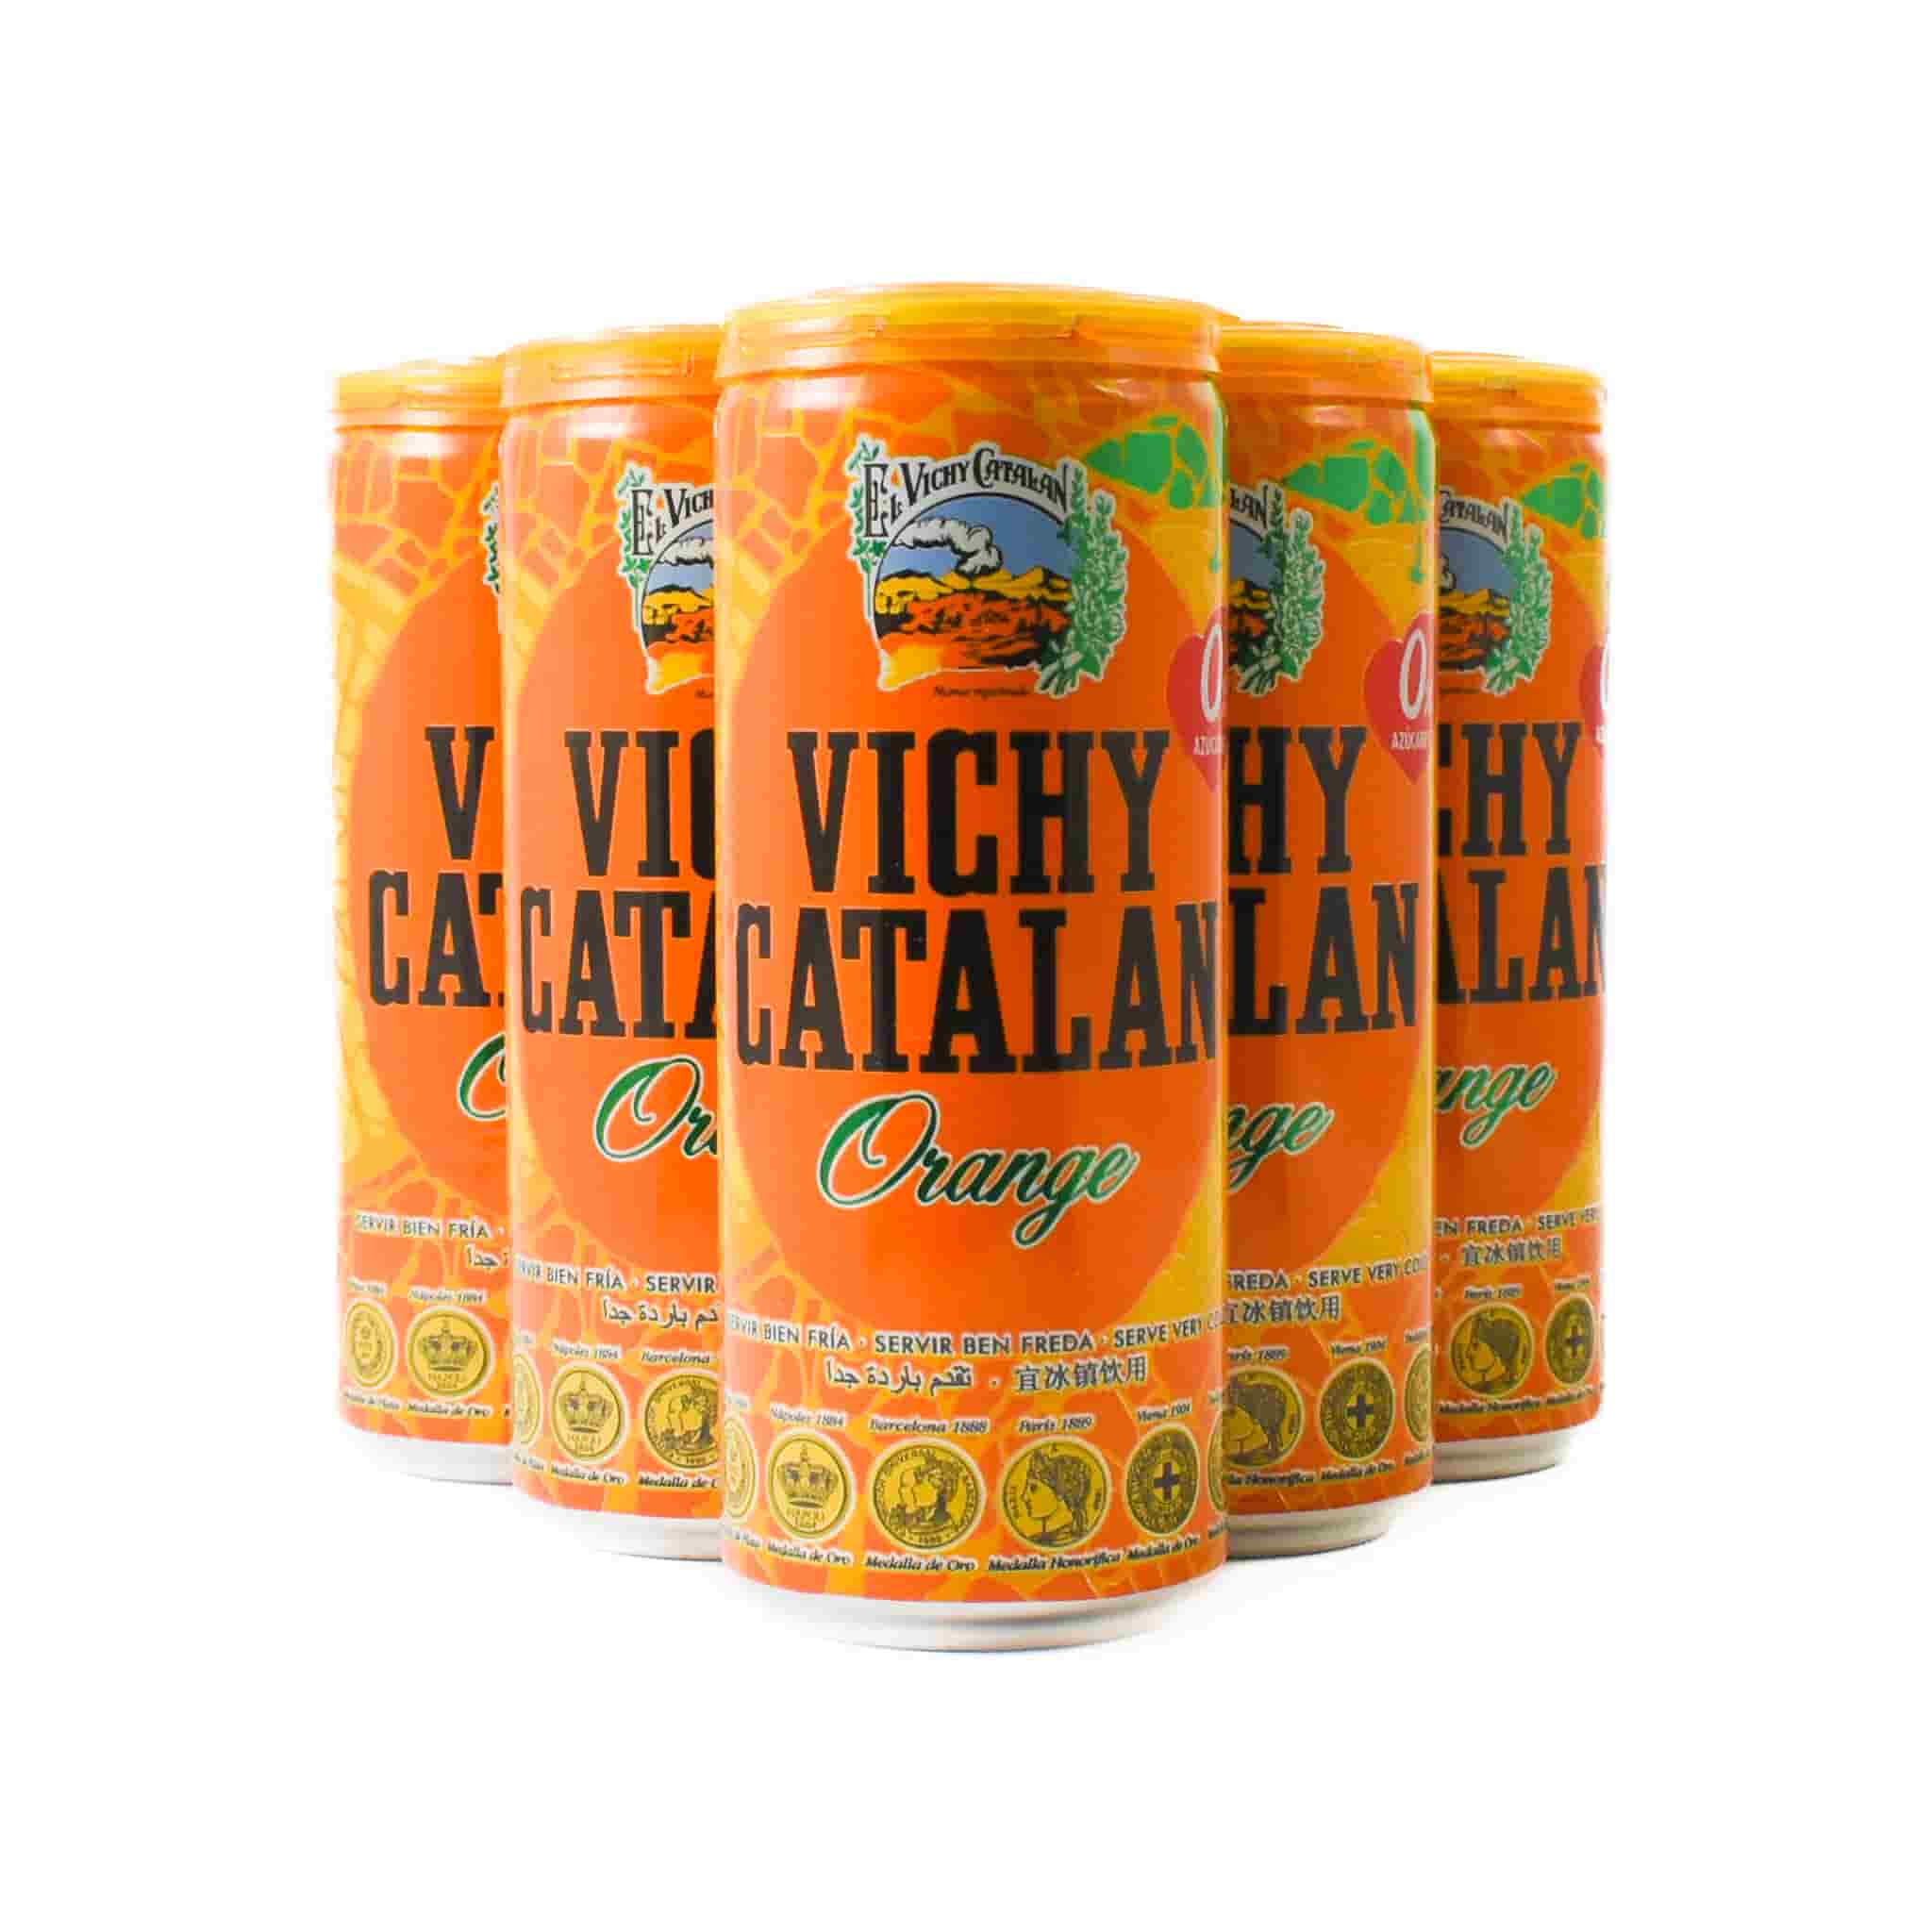 6x Vichy Catalan Sparkling Orange Mineral Water, 330ml